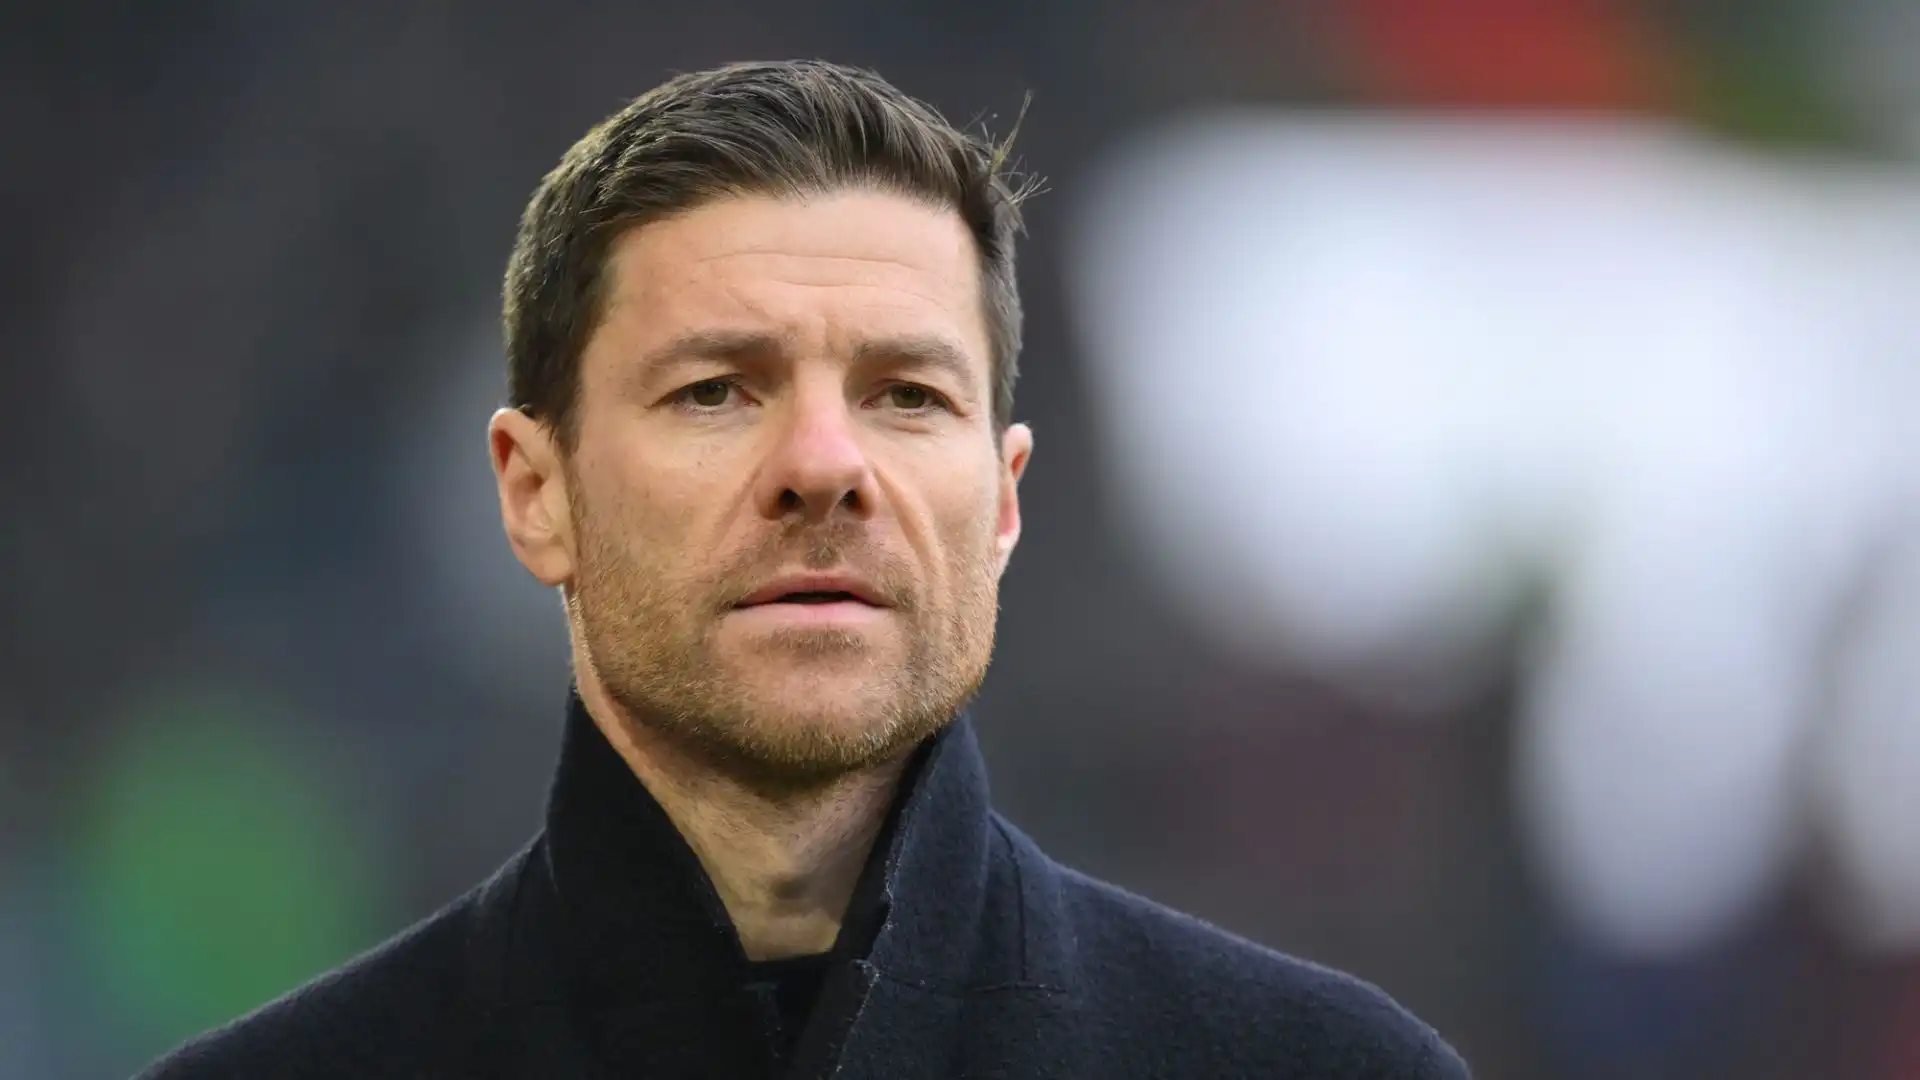 L'allenatore spagnolo la scorsa settimana ha annunciato che resterà al Bayer Leverkusen anche nella prossima stagione